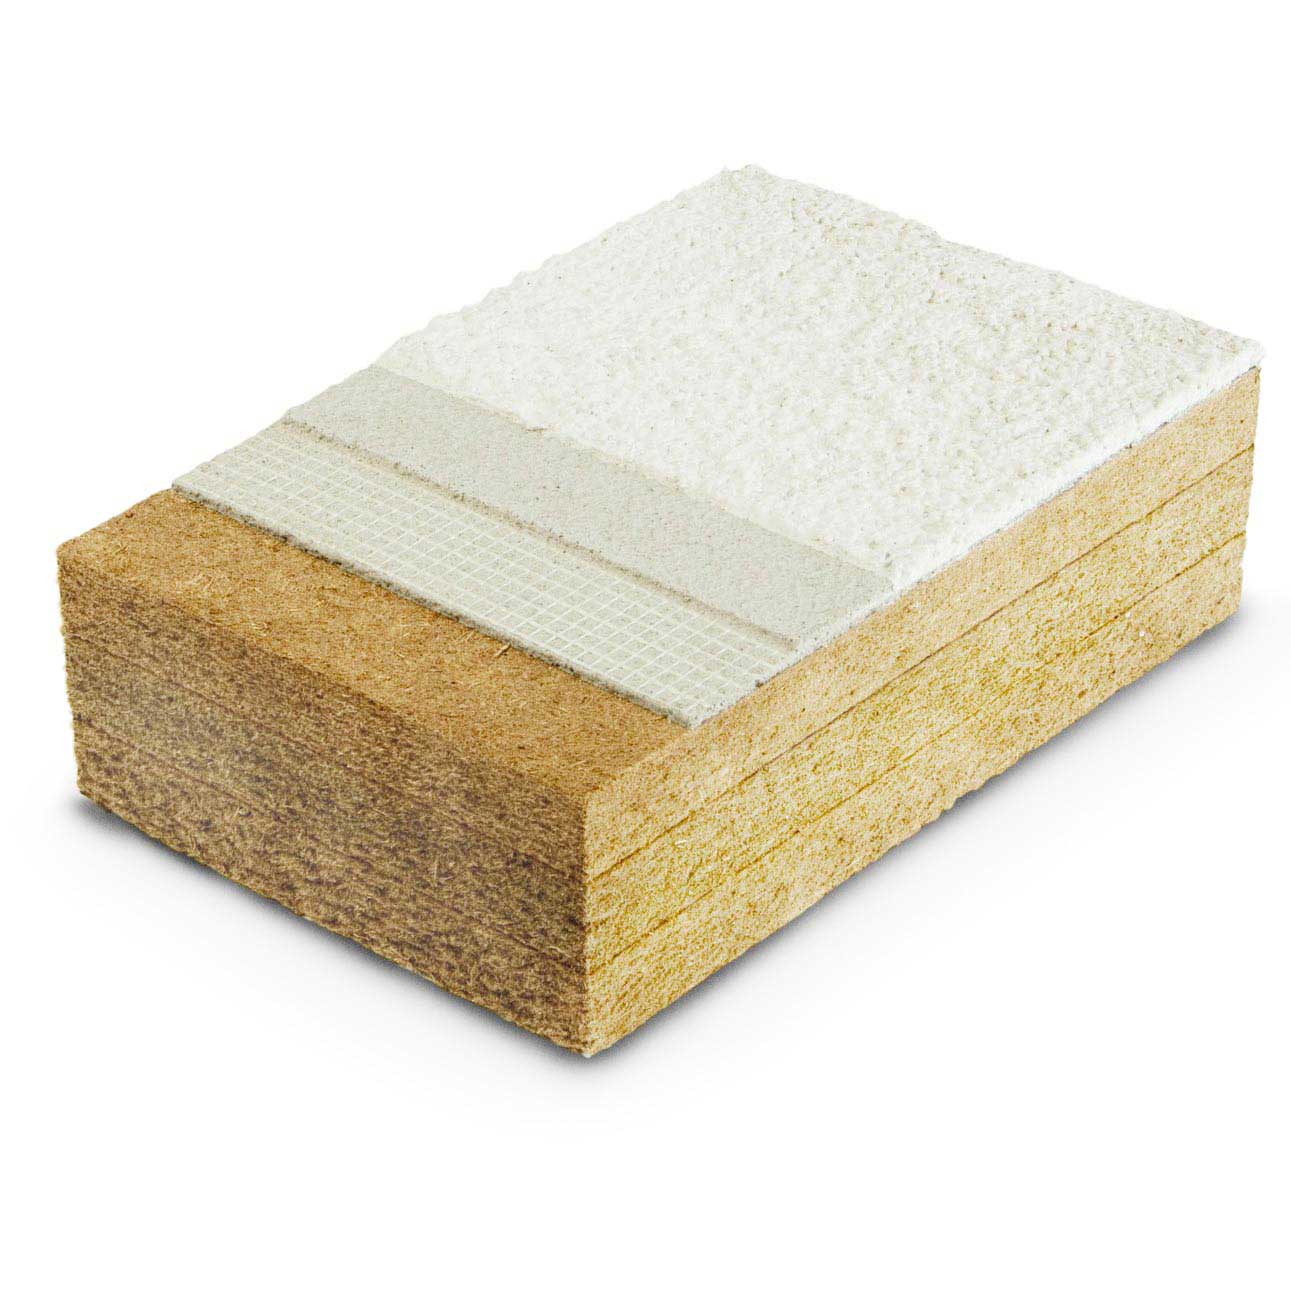 Fibra di legno Protect dry densità 110, 140, 180kg/m³